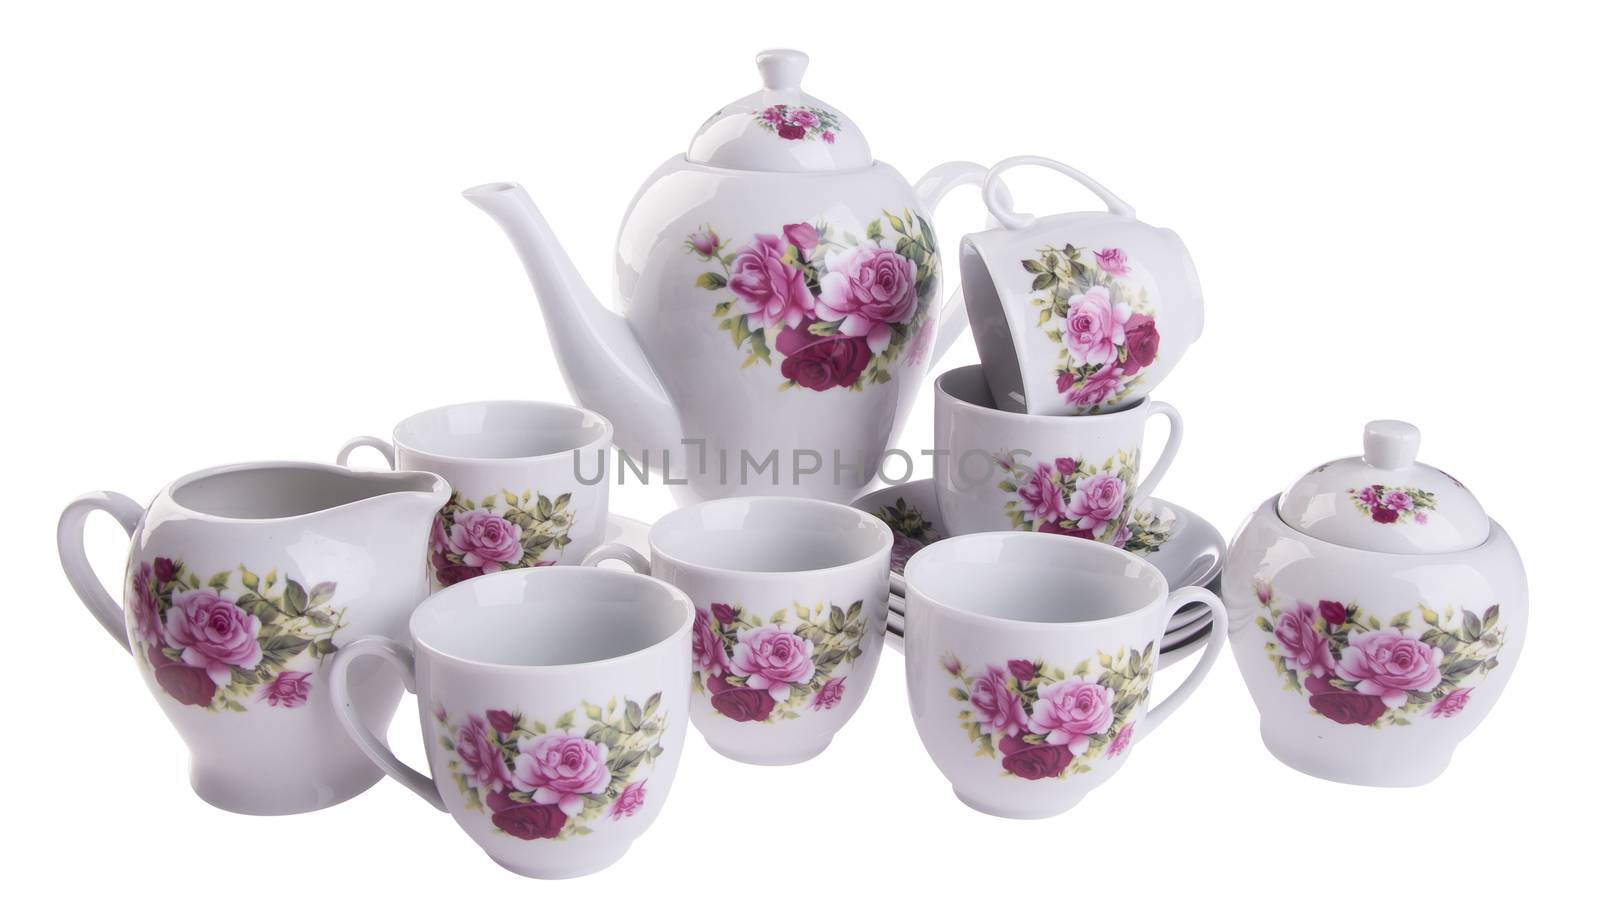 tea sets. tea sets on a background by heinteh